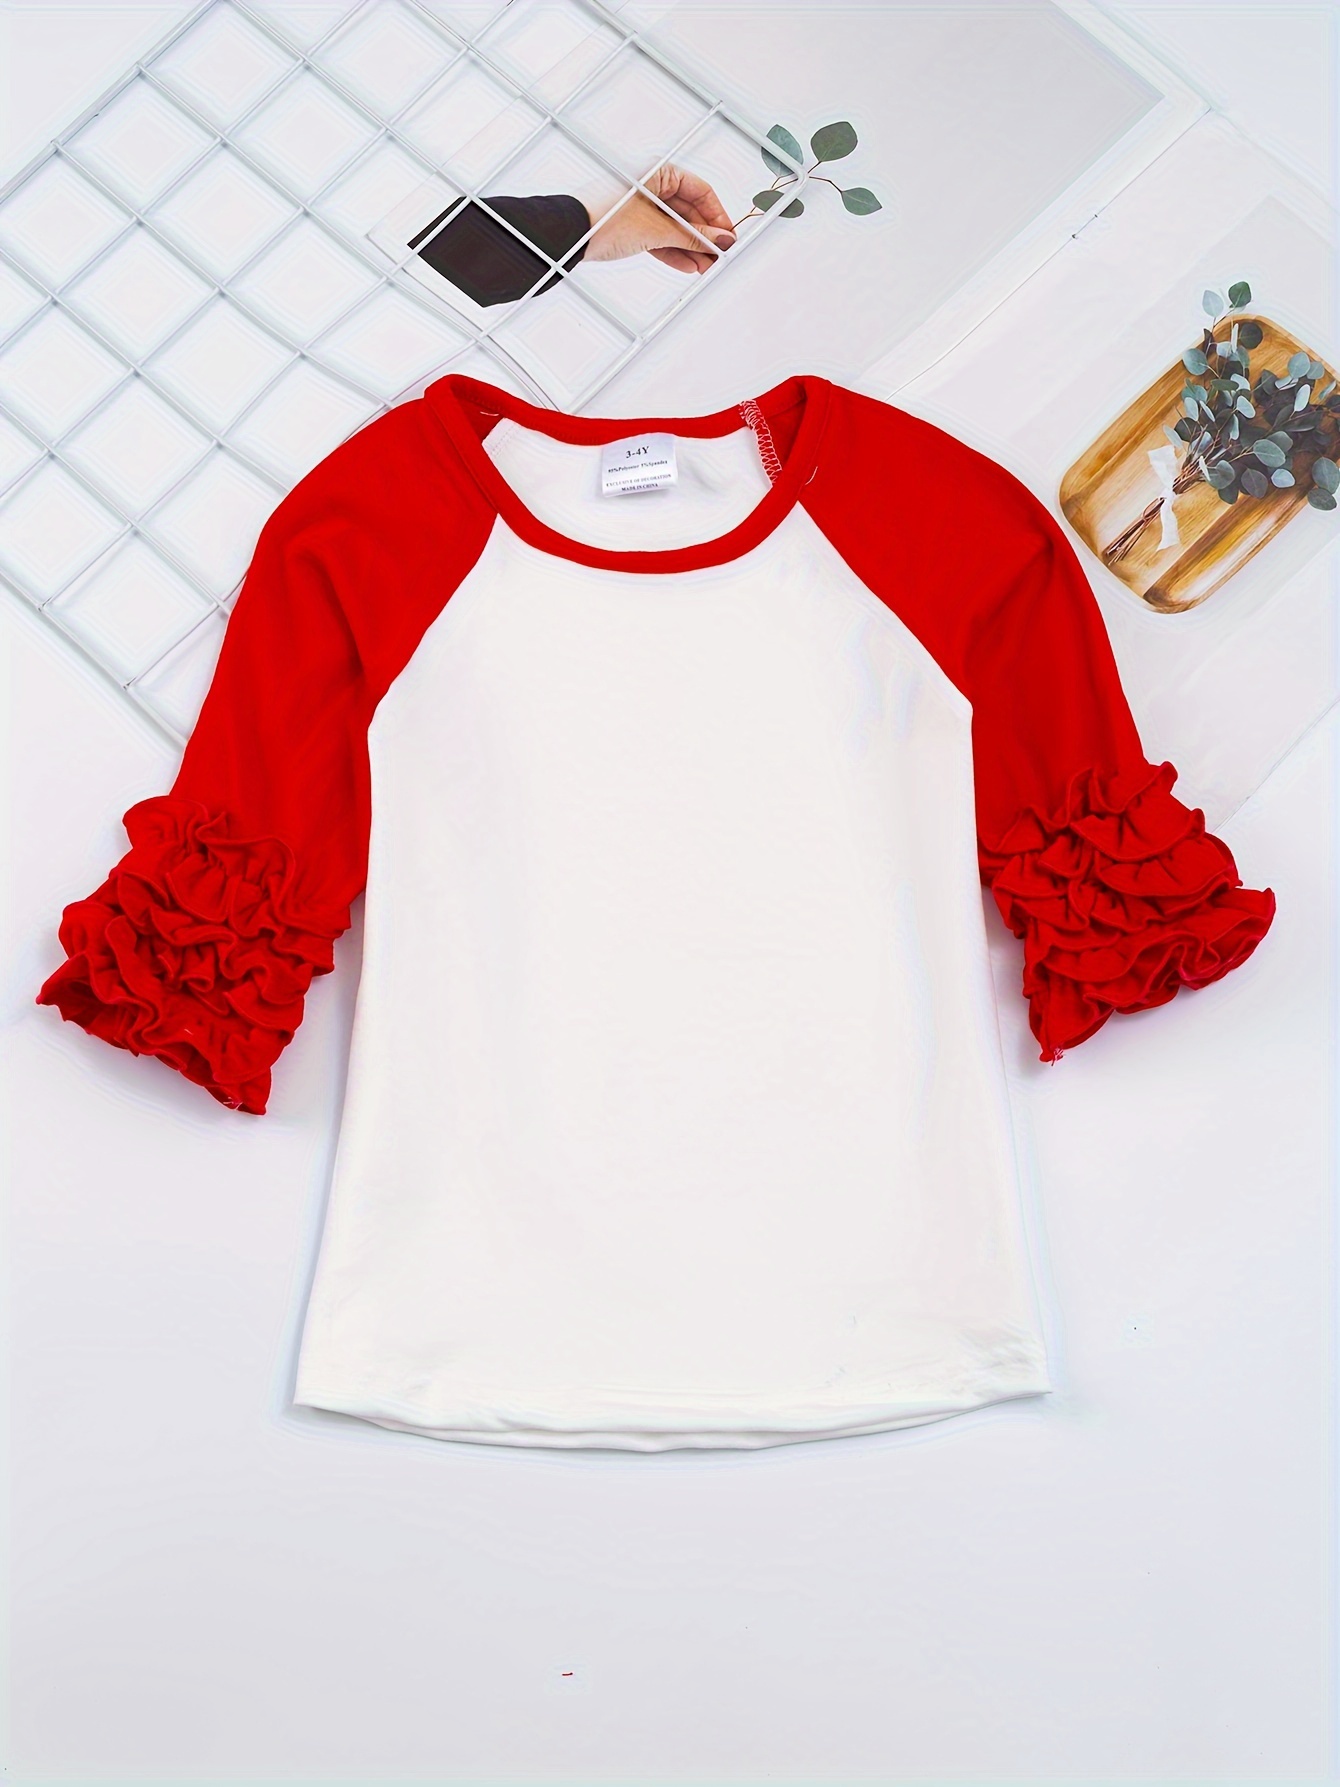 Camiseta roja para niños y niñas, ropa deportiva de moda